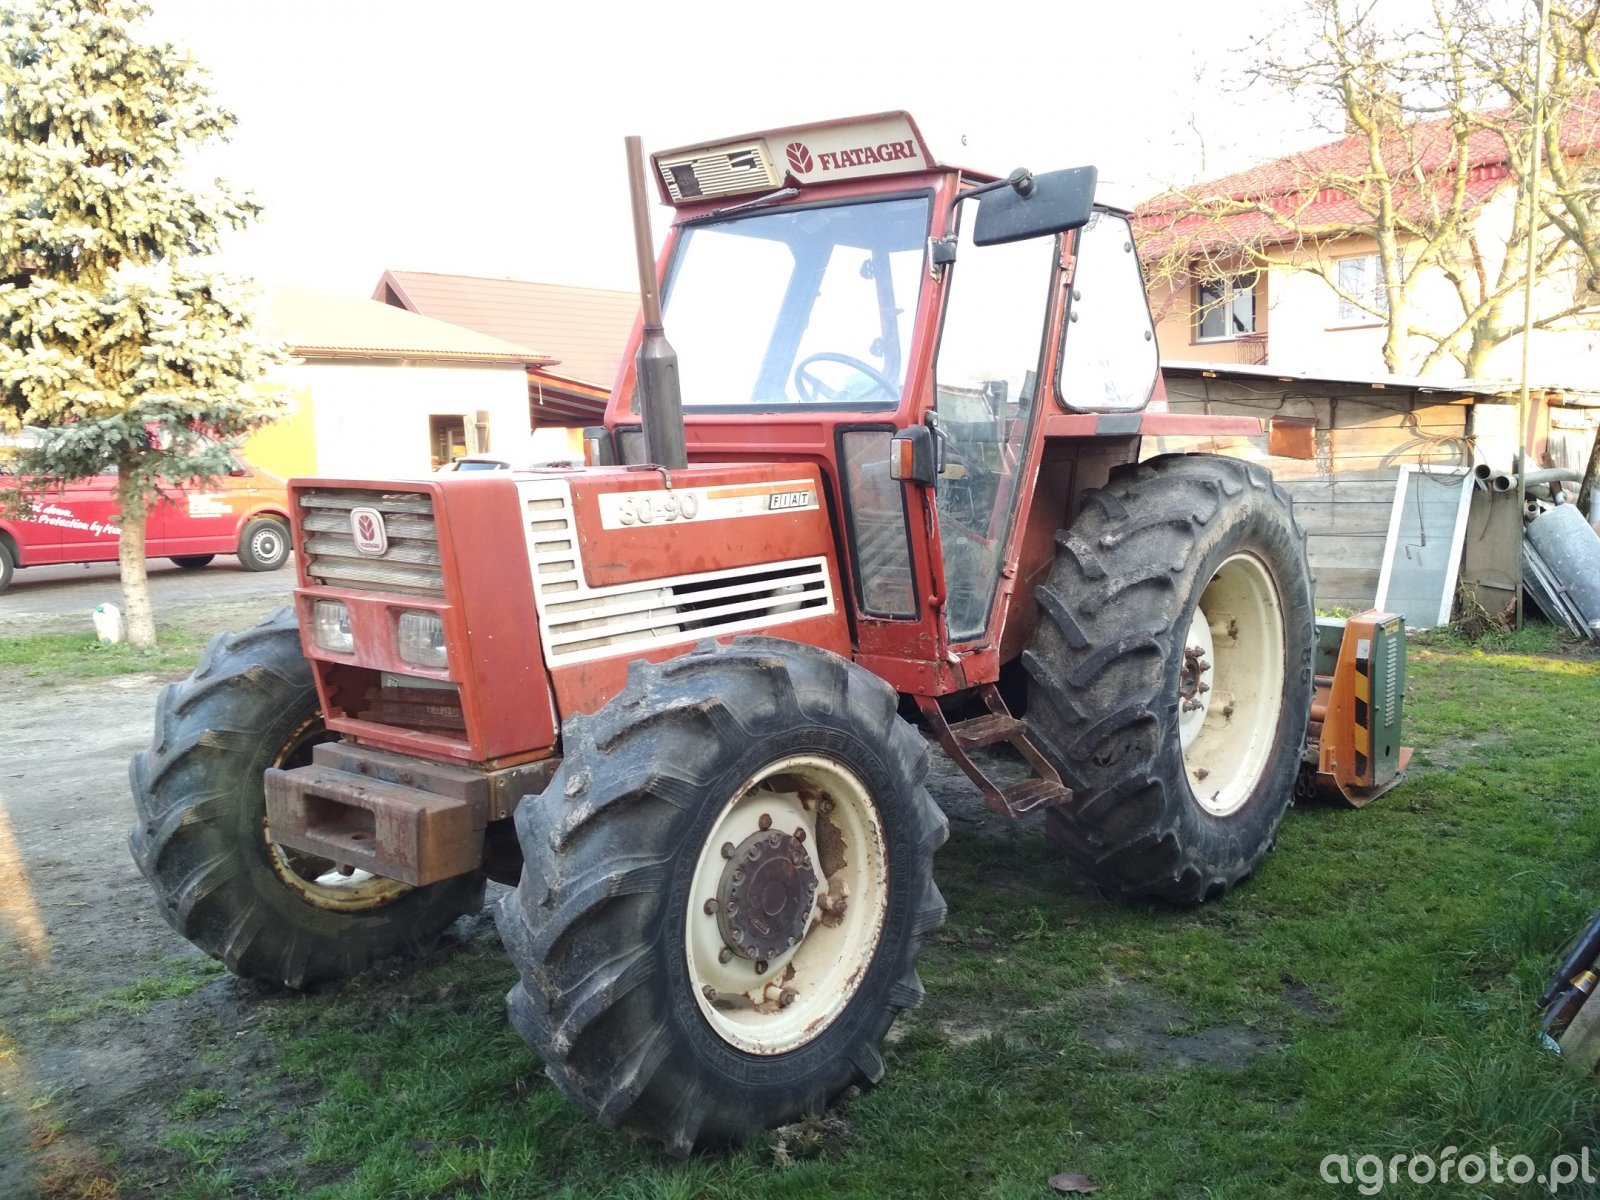 Zdjęcie Traktor Fiat 80-90 Id:747990 - Galeria Rolnicza Agrofoto